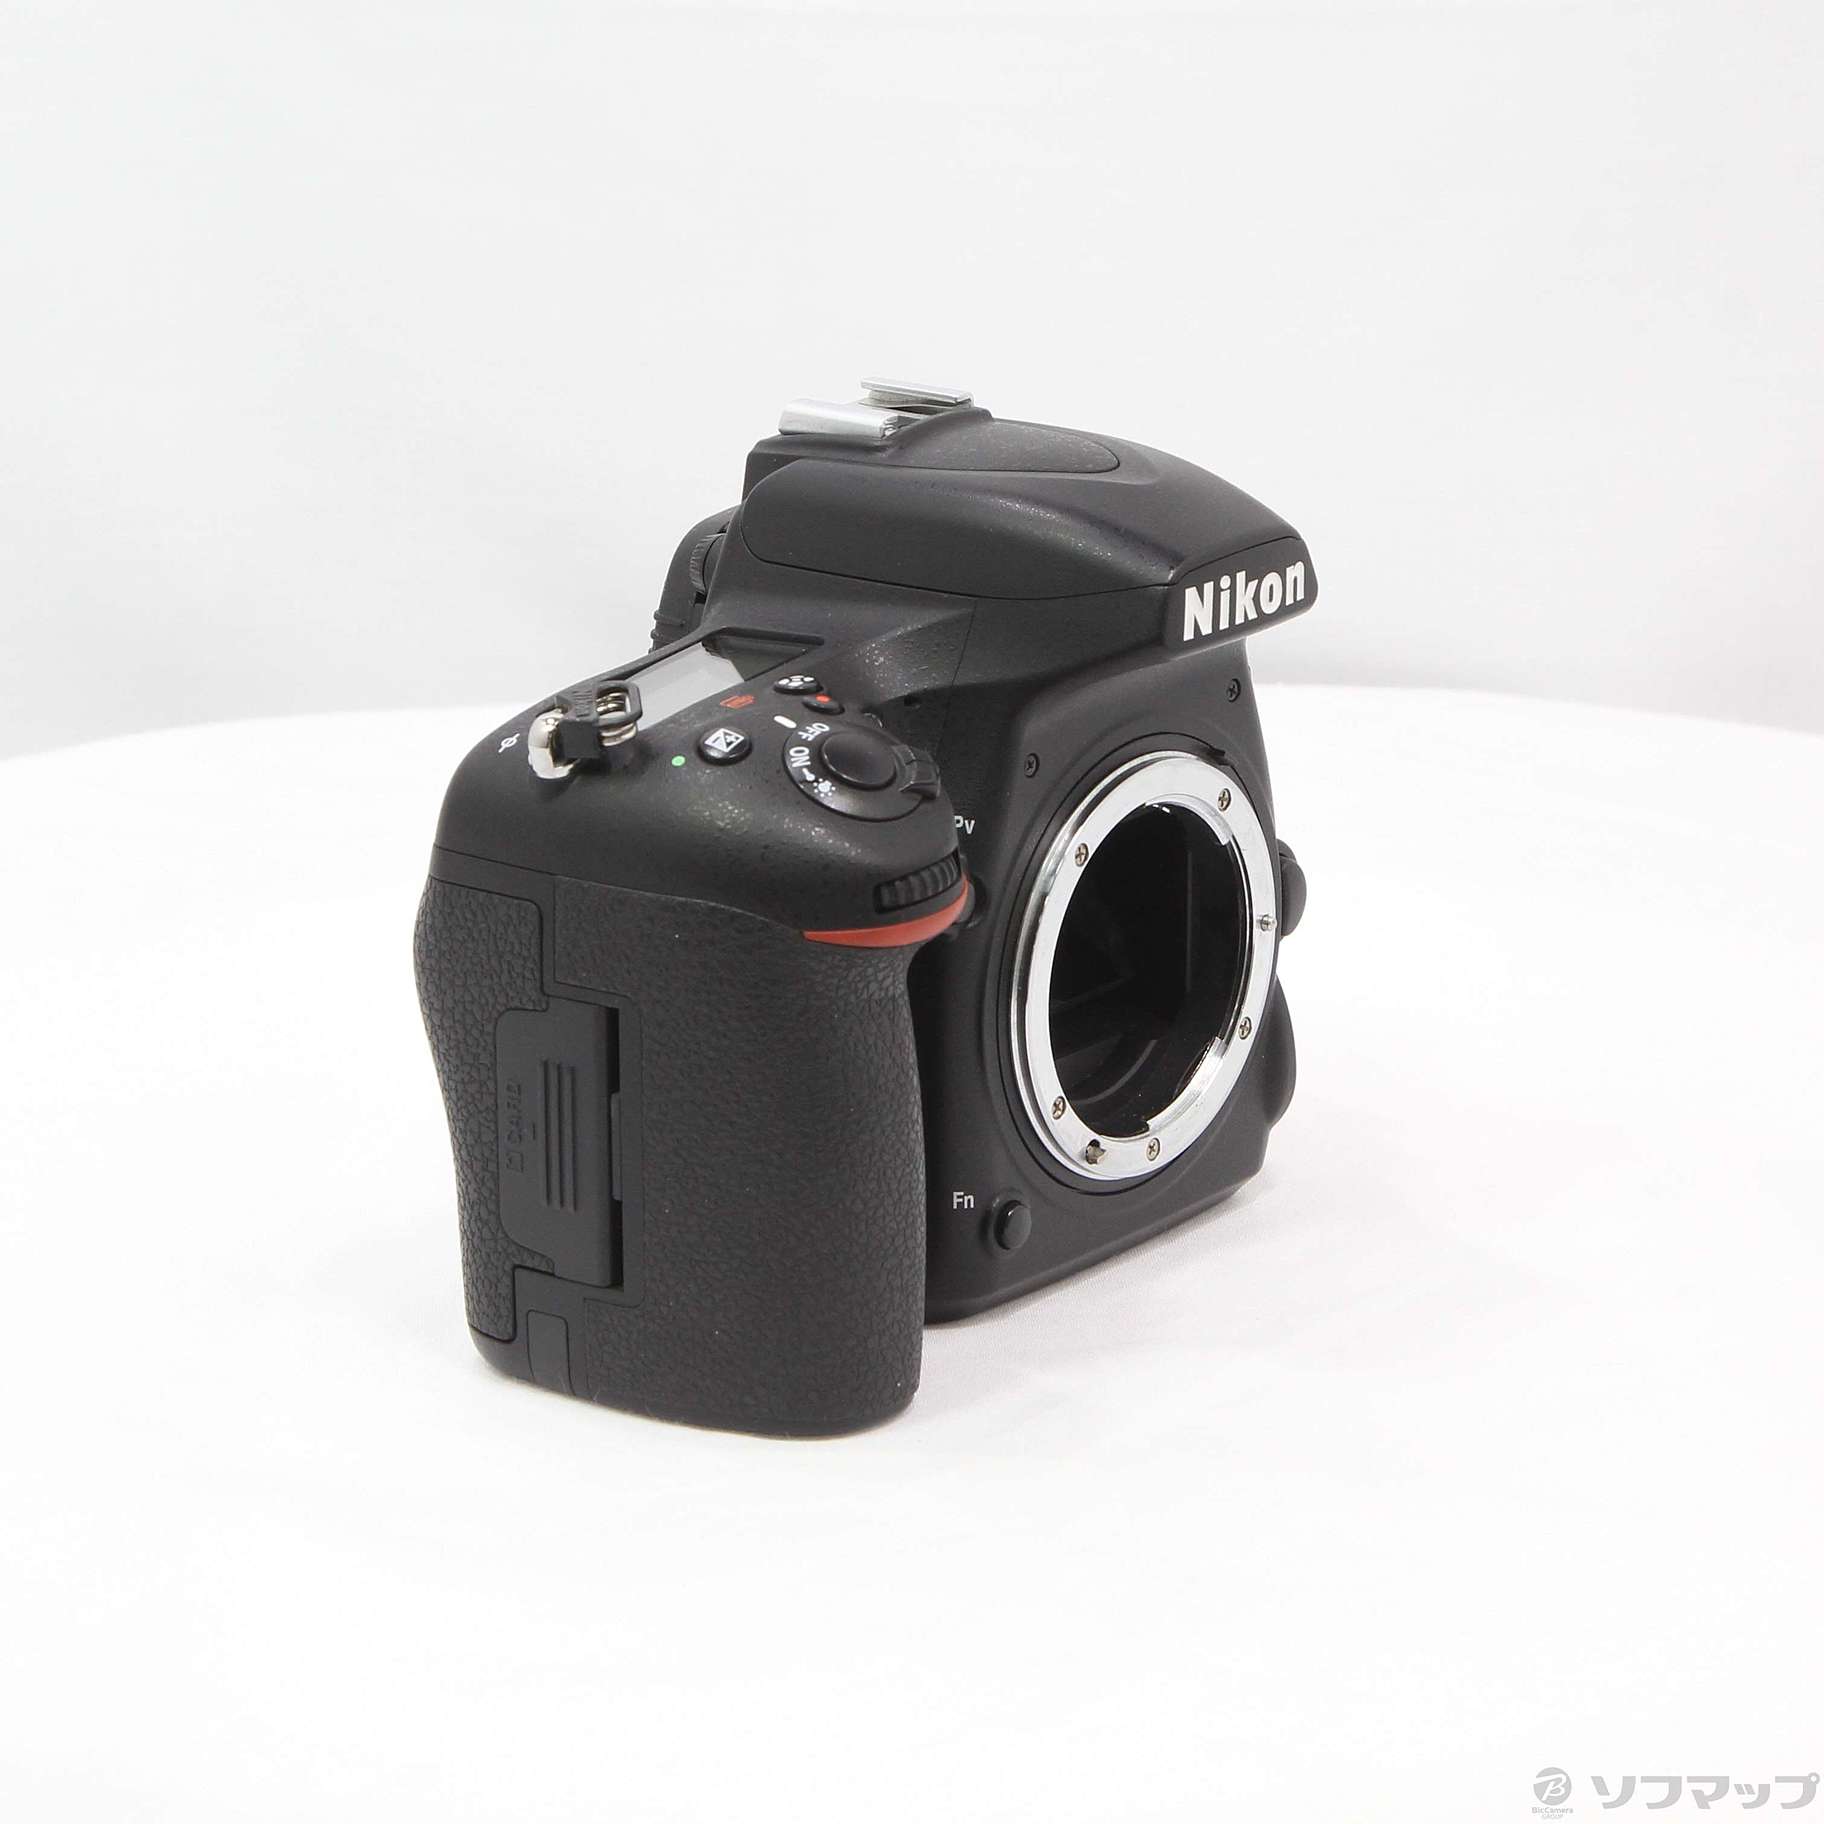 ジャンク品 Nikon D750 ボディのみ primeinsuranceltd.co.uk